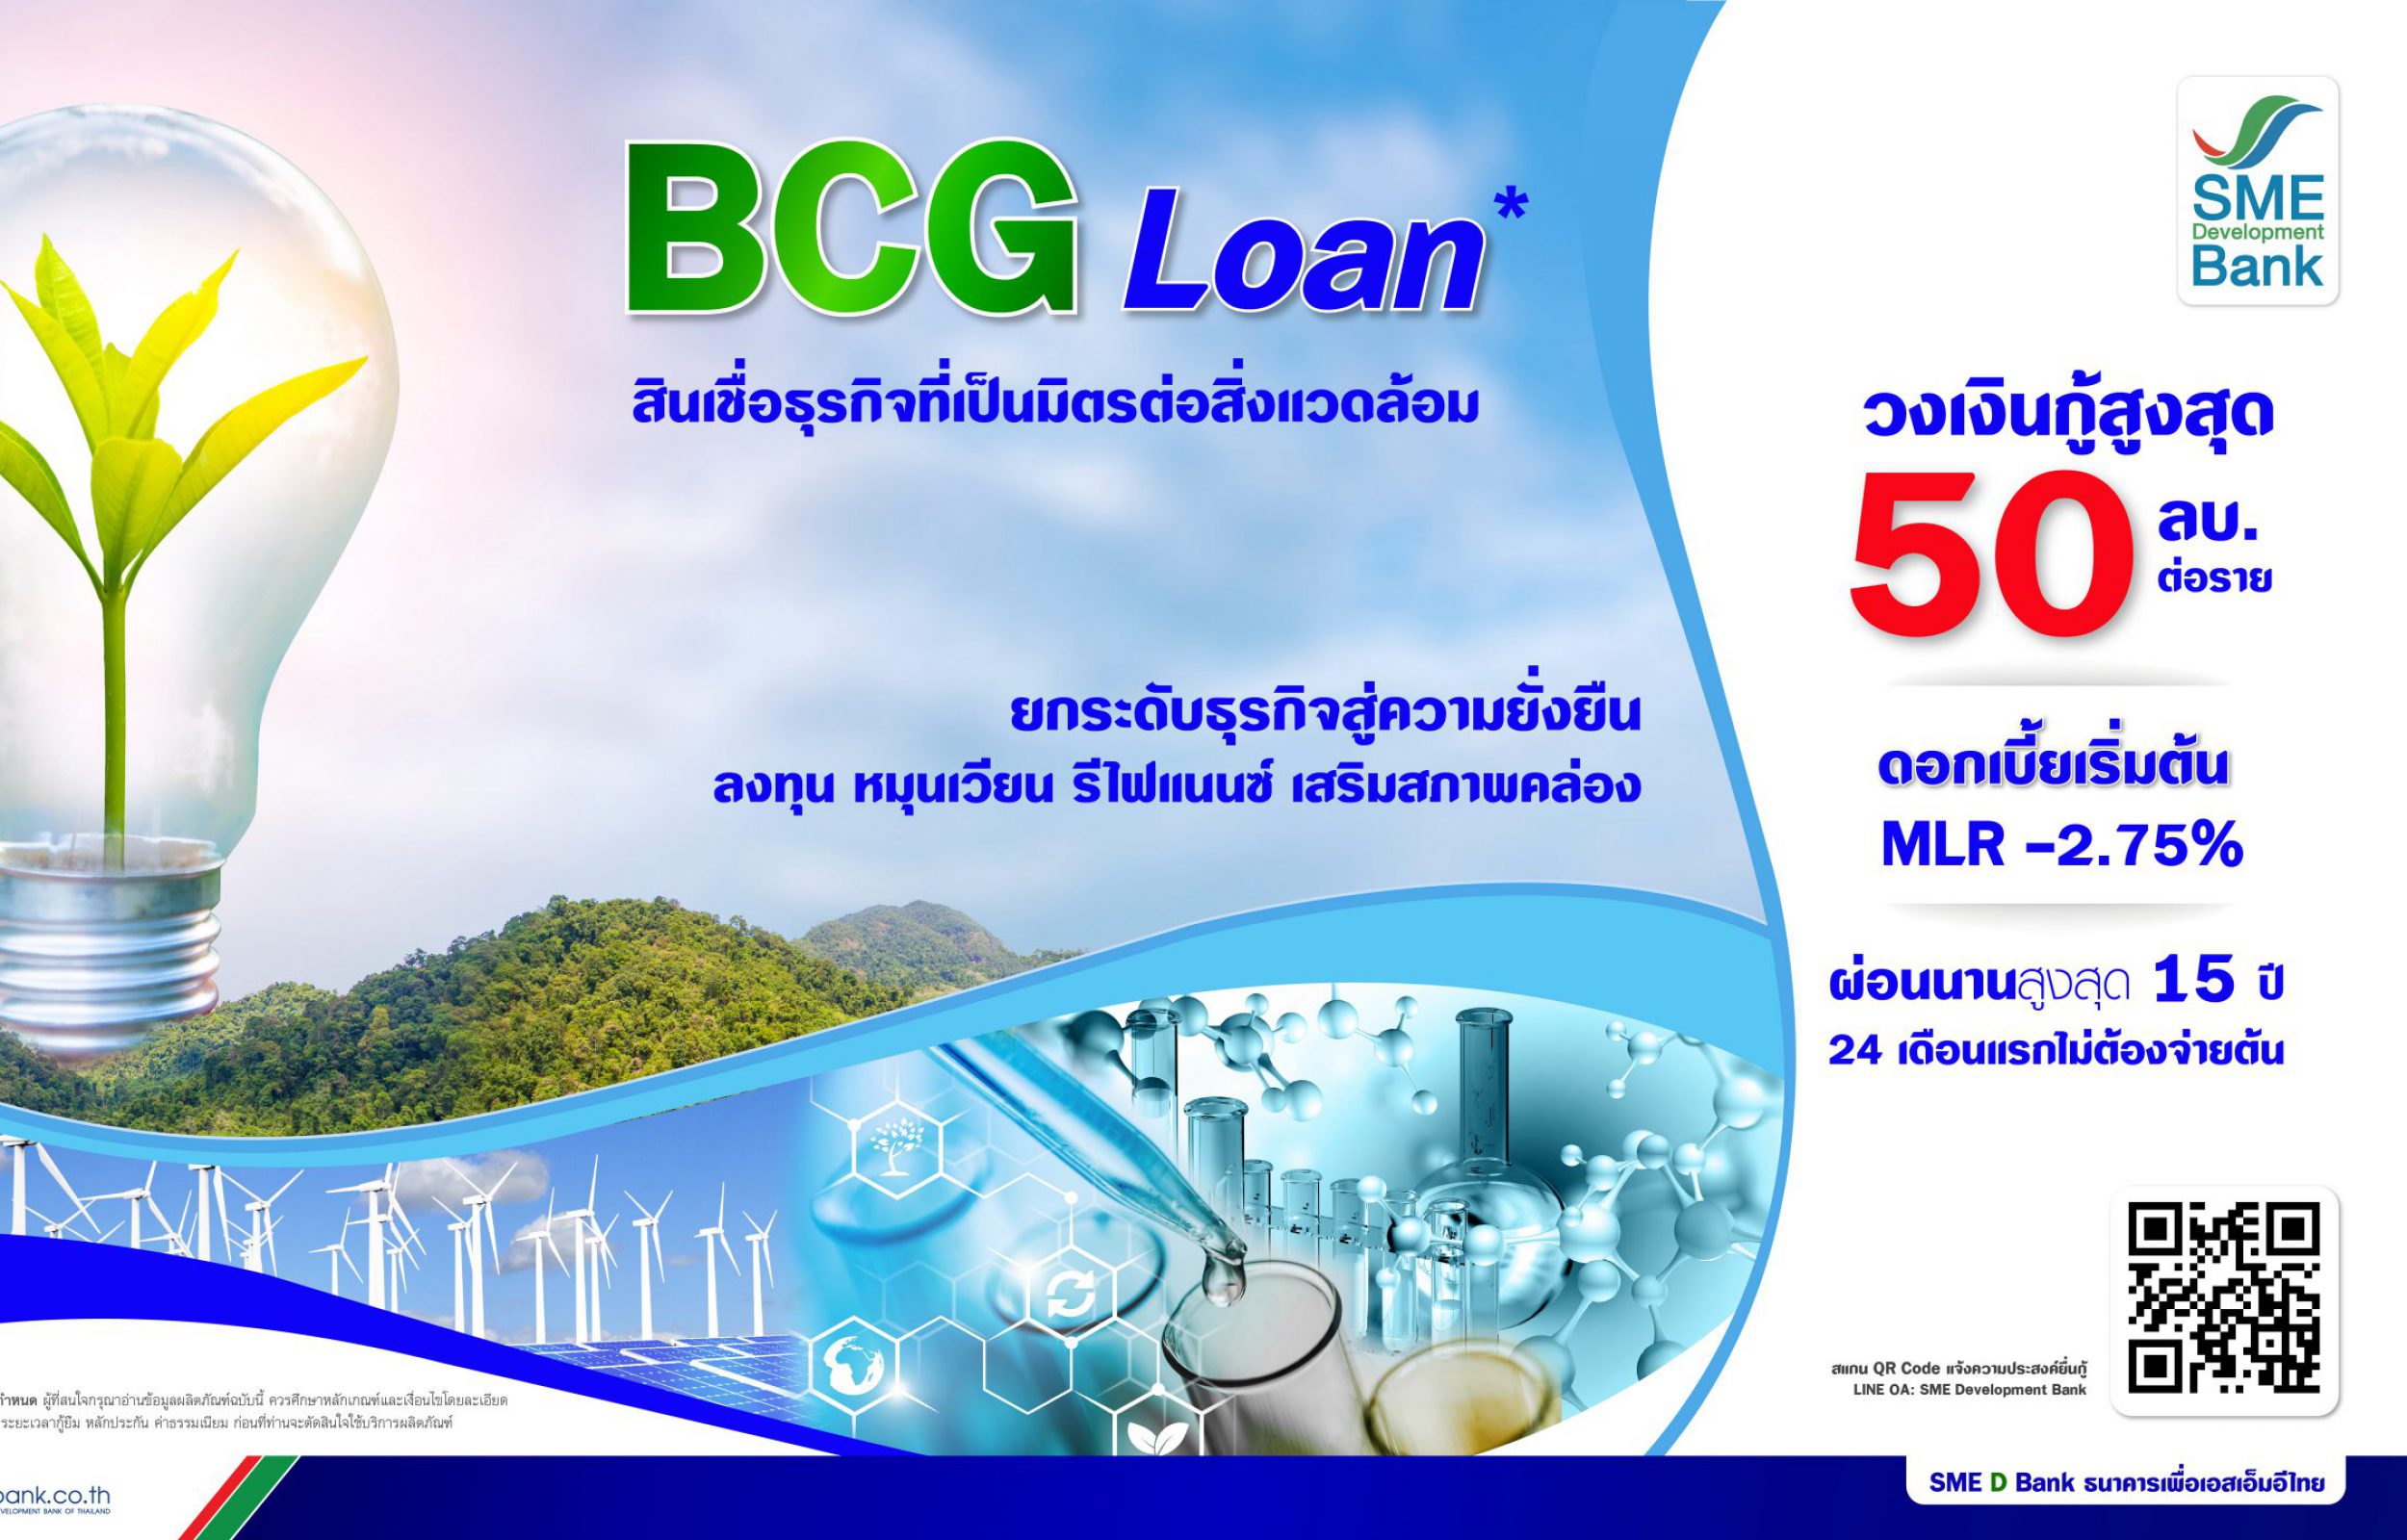 BCG Loan สินเชื่อธุรกิจที่เป็นมิตรต่อสิ่งแวดล้อม